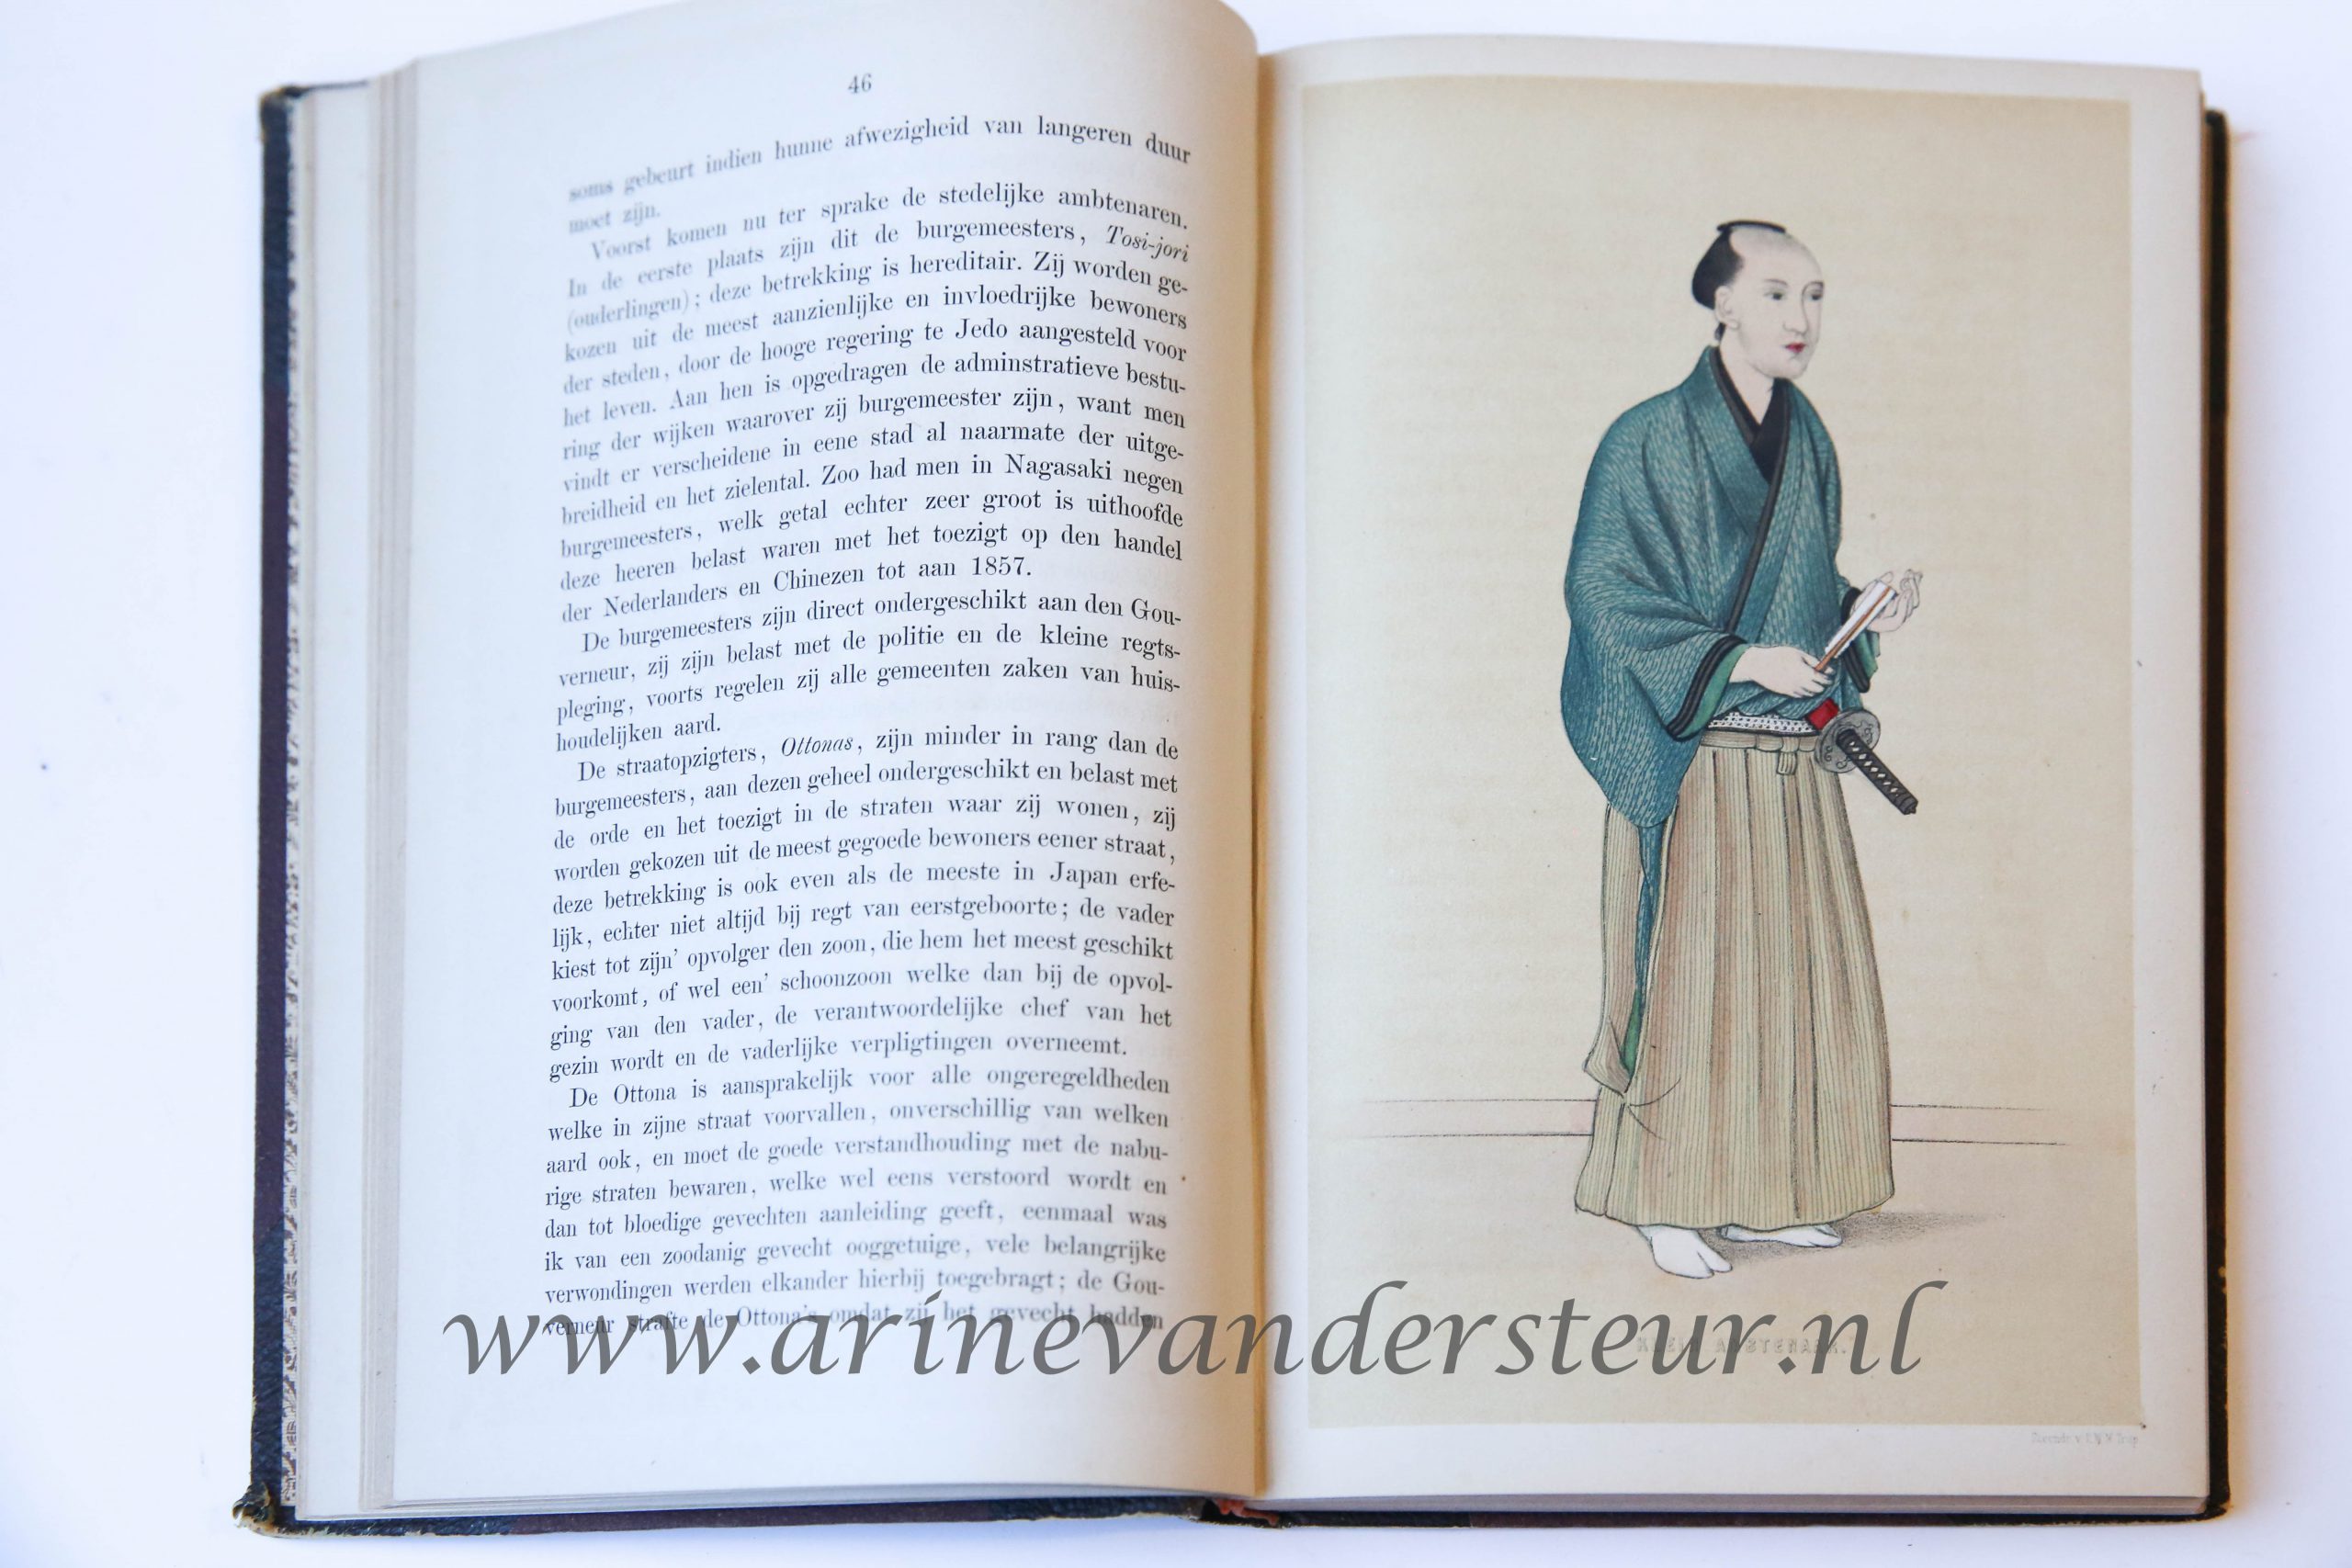 Vijf jaren in Japan. (1857-1863.). Bijdragen tot de kennis van het Japansche keizerrijk en zijne bevolking. 2 vols. Leiden, Van den Heuvell & Van Santen, 1867.